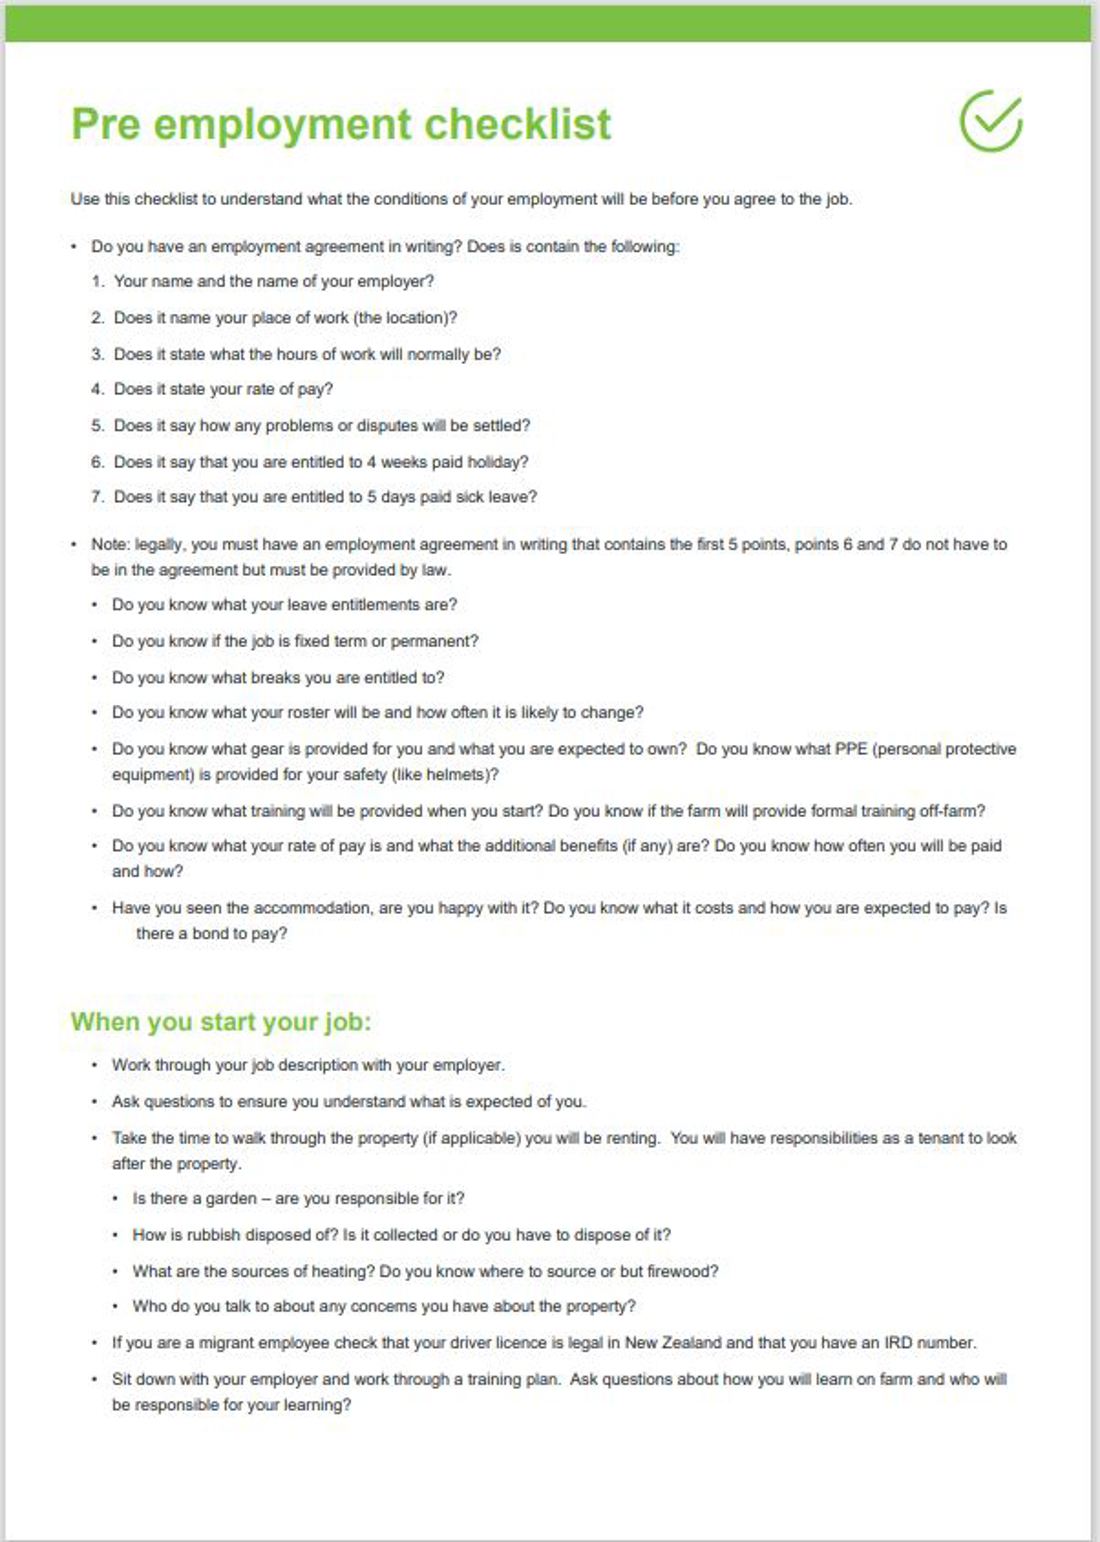 Pre Employment Checklist Image